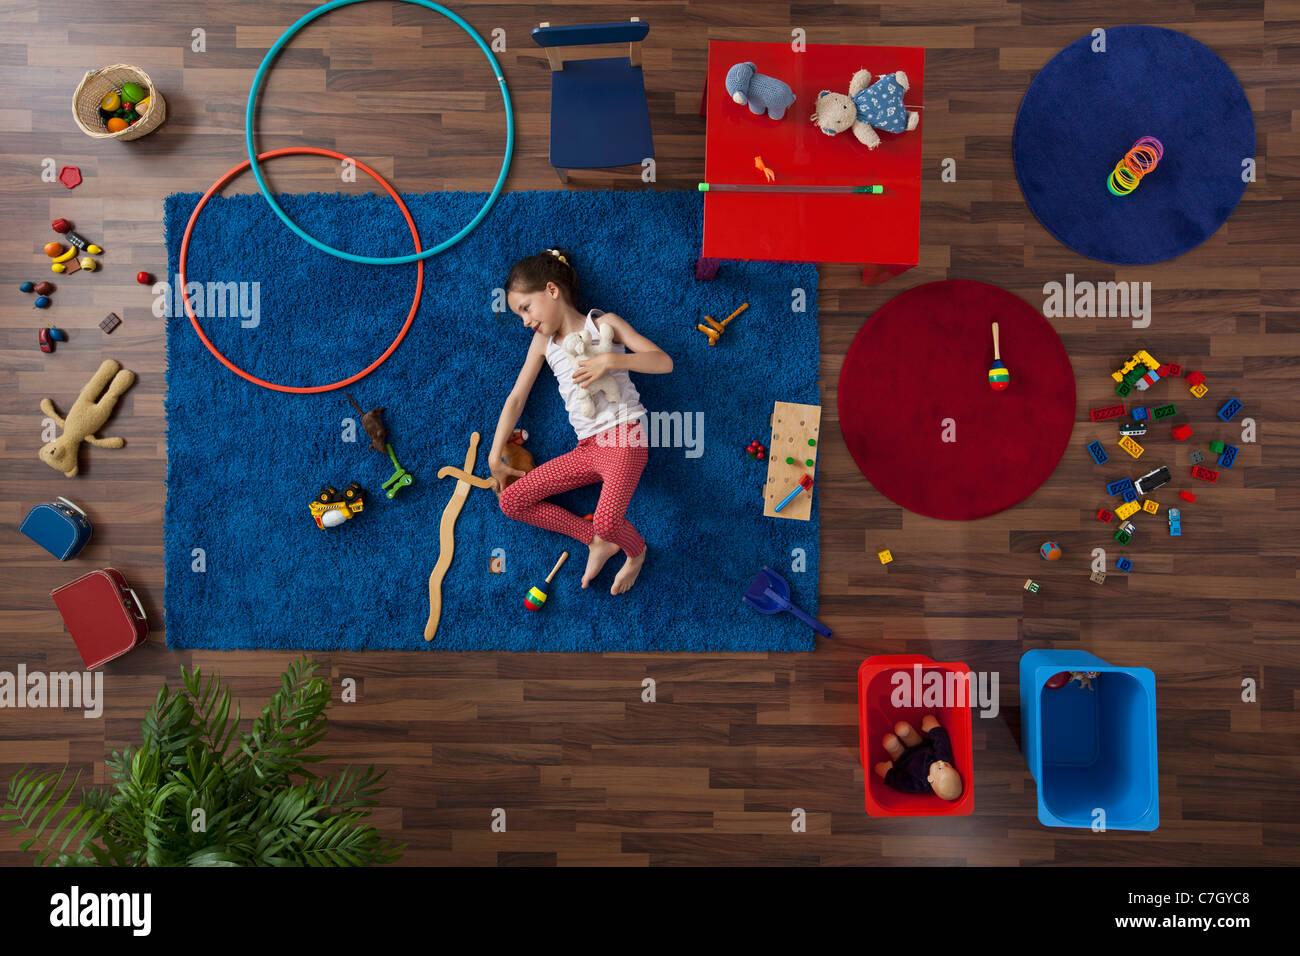 Une petite fille couchée sur un tapis avec des jouets, overhead view Banque D'Images